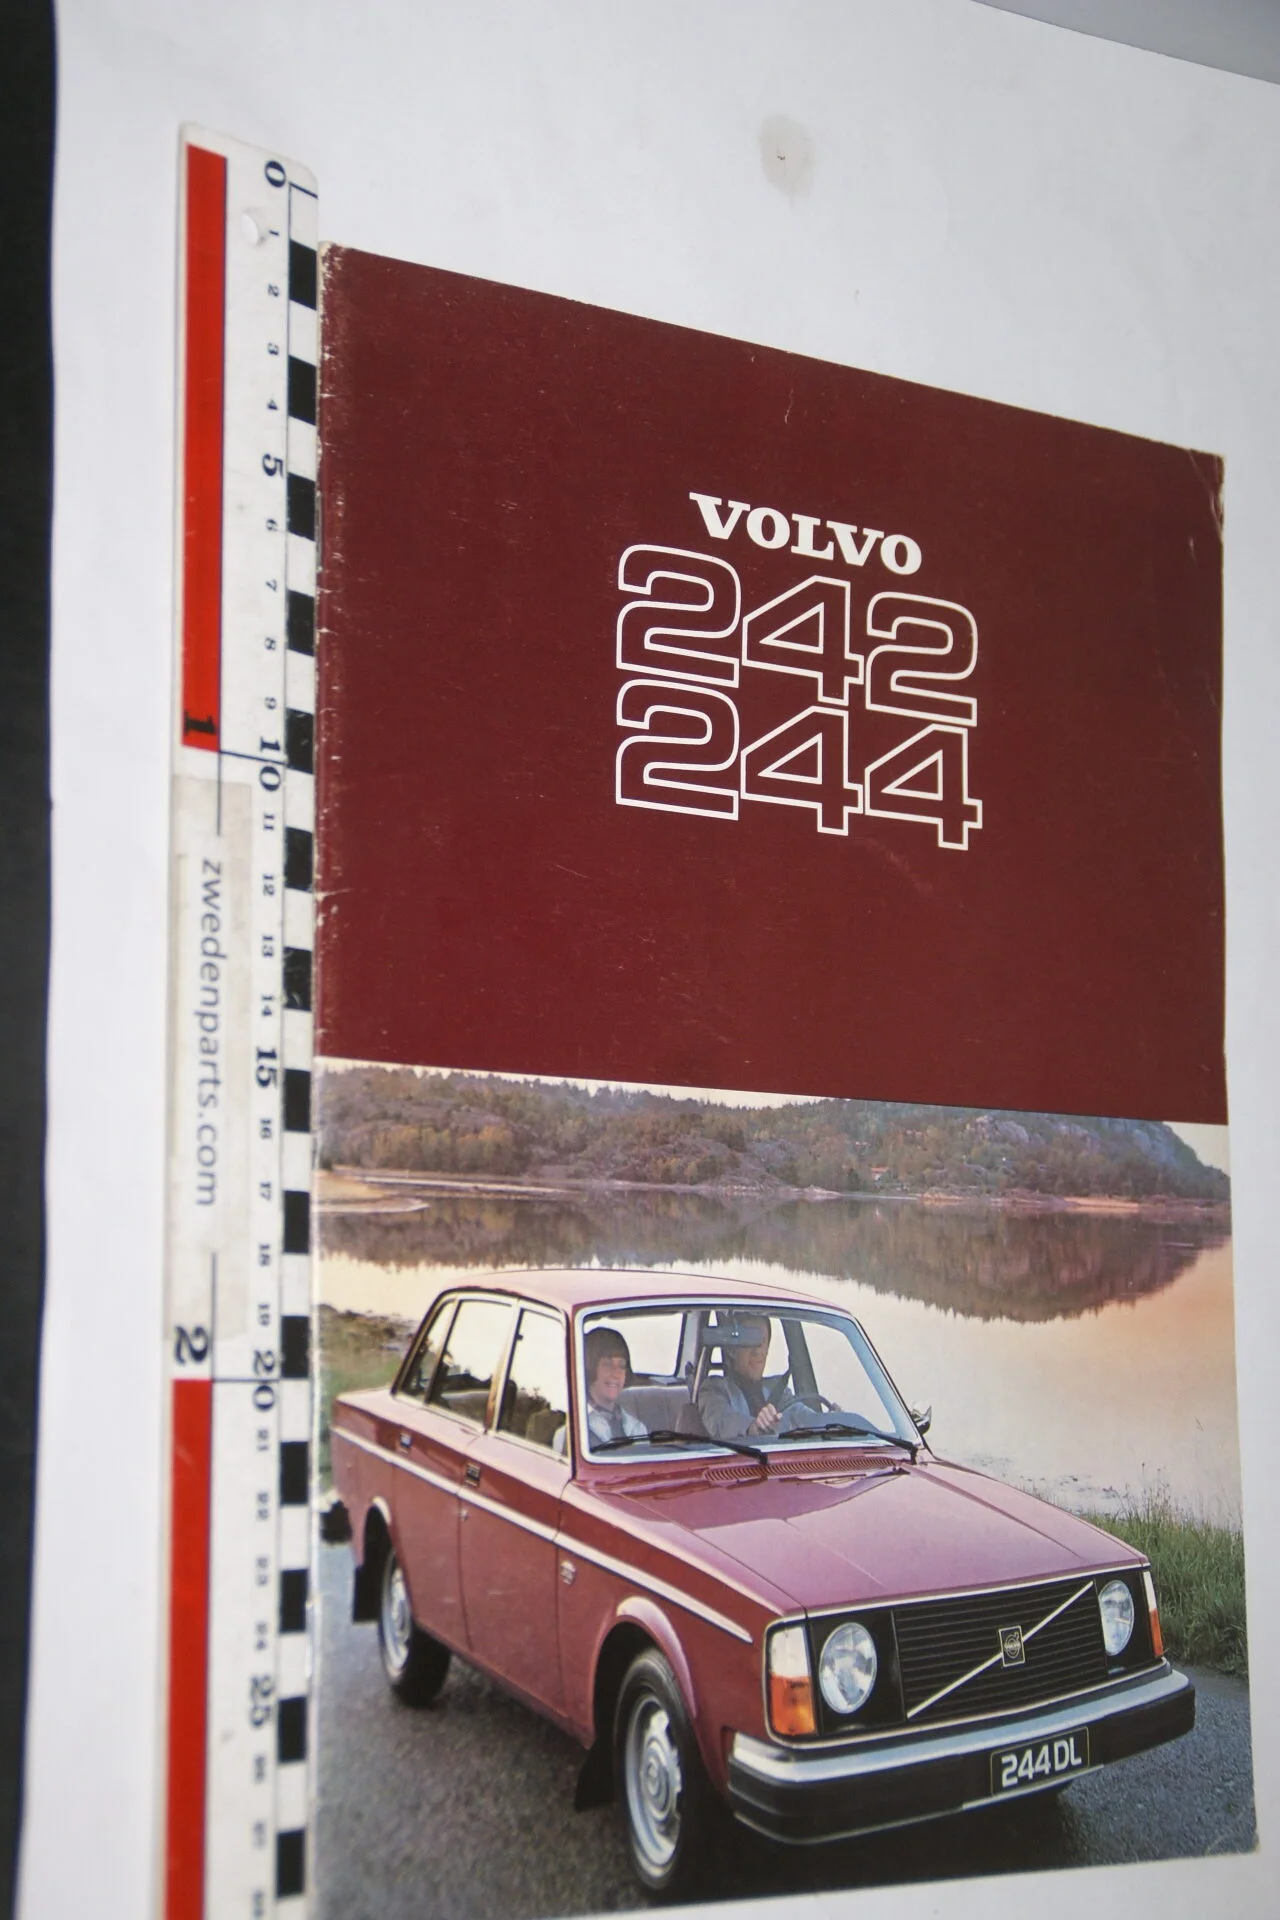 DSC08288 1977 Brochure Volvo 242 244 RSPPV 4021-6446910b